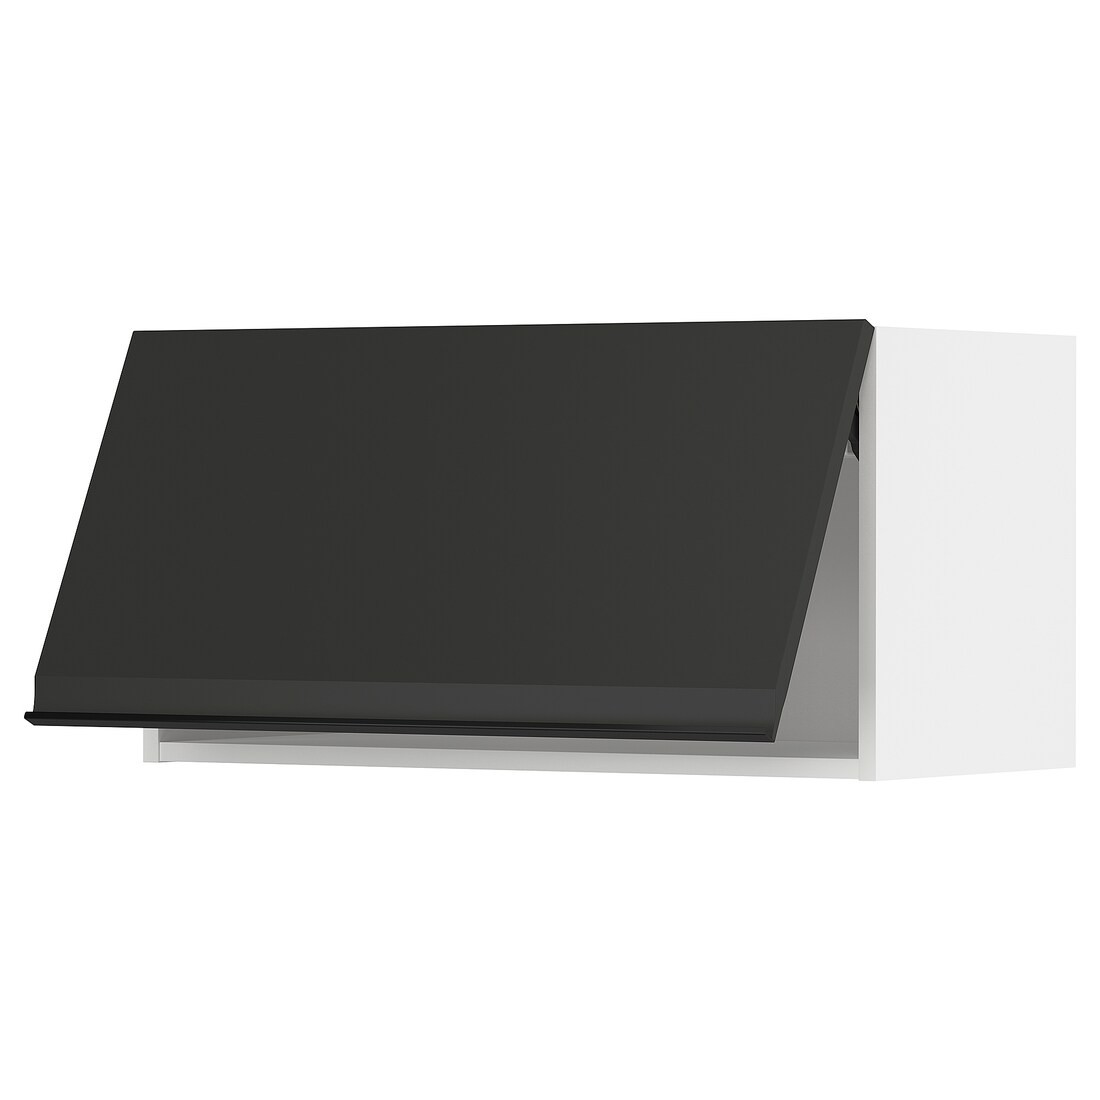 METOD МЕТОД Навесной горизонтальный шкаф, белый / Upplöv матовый антрацит, 80x40 см